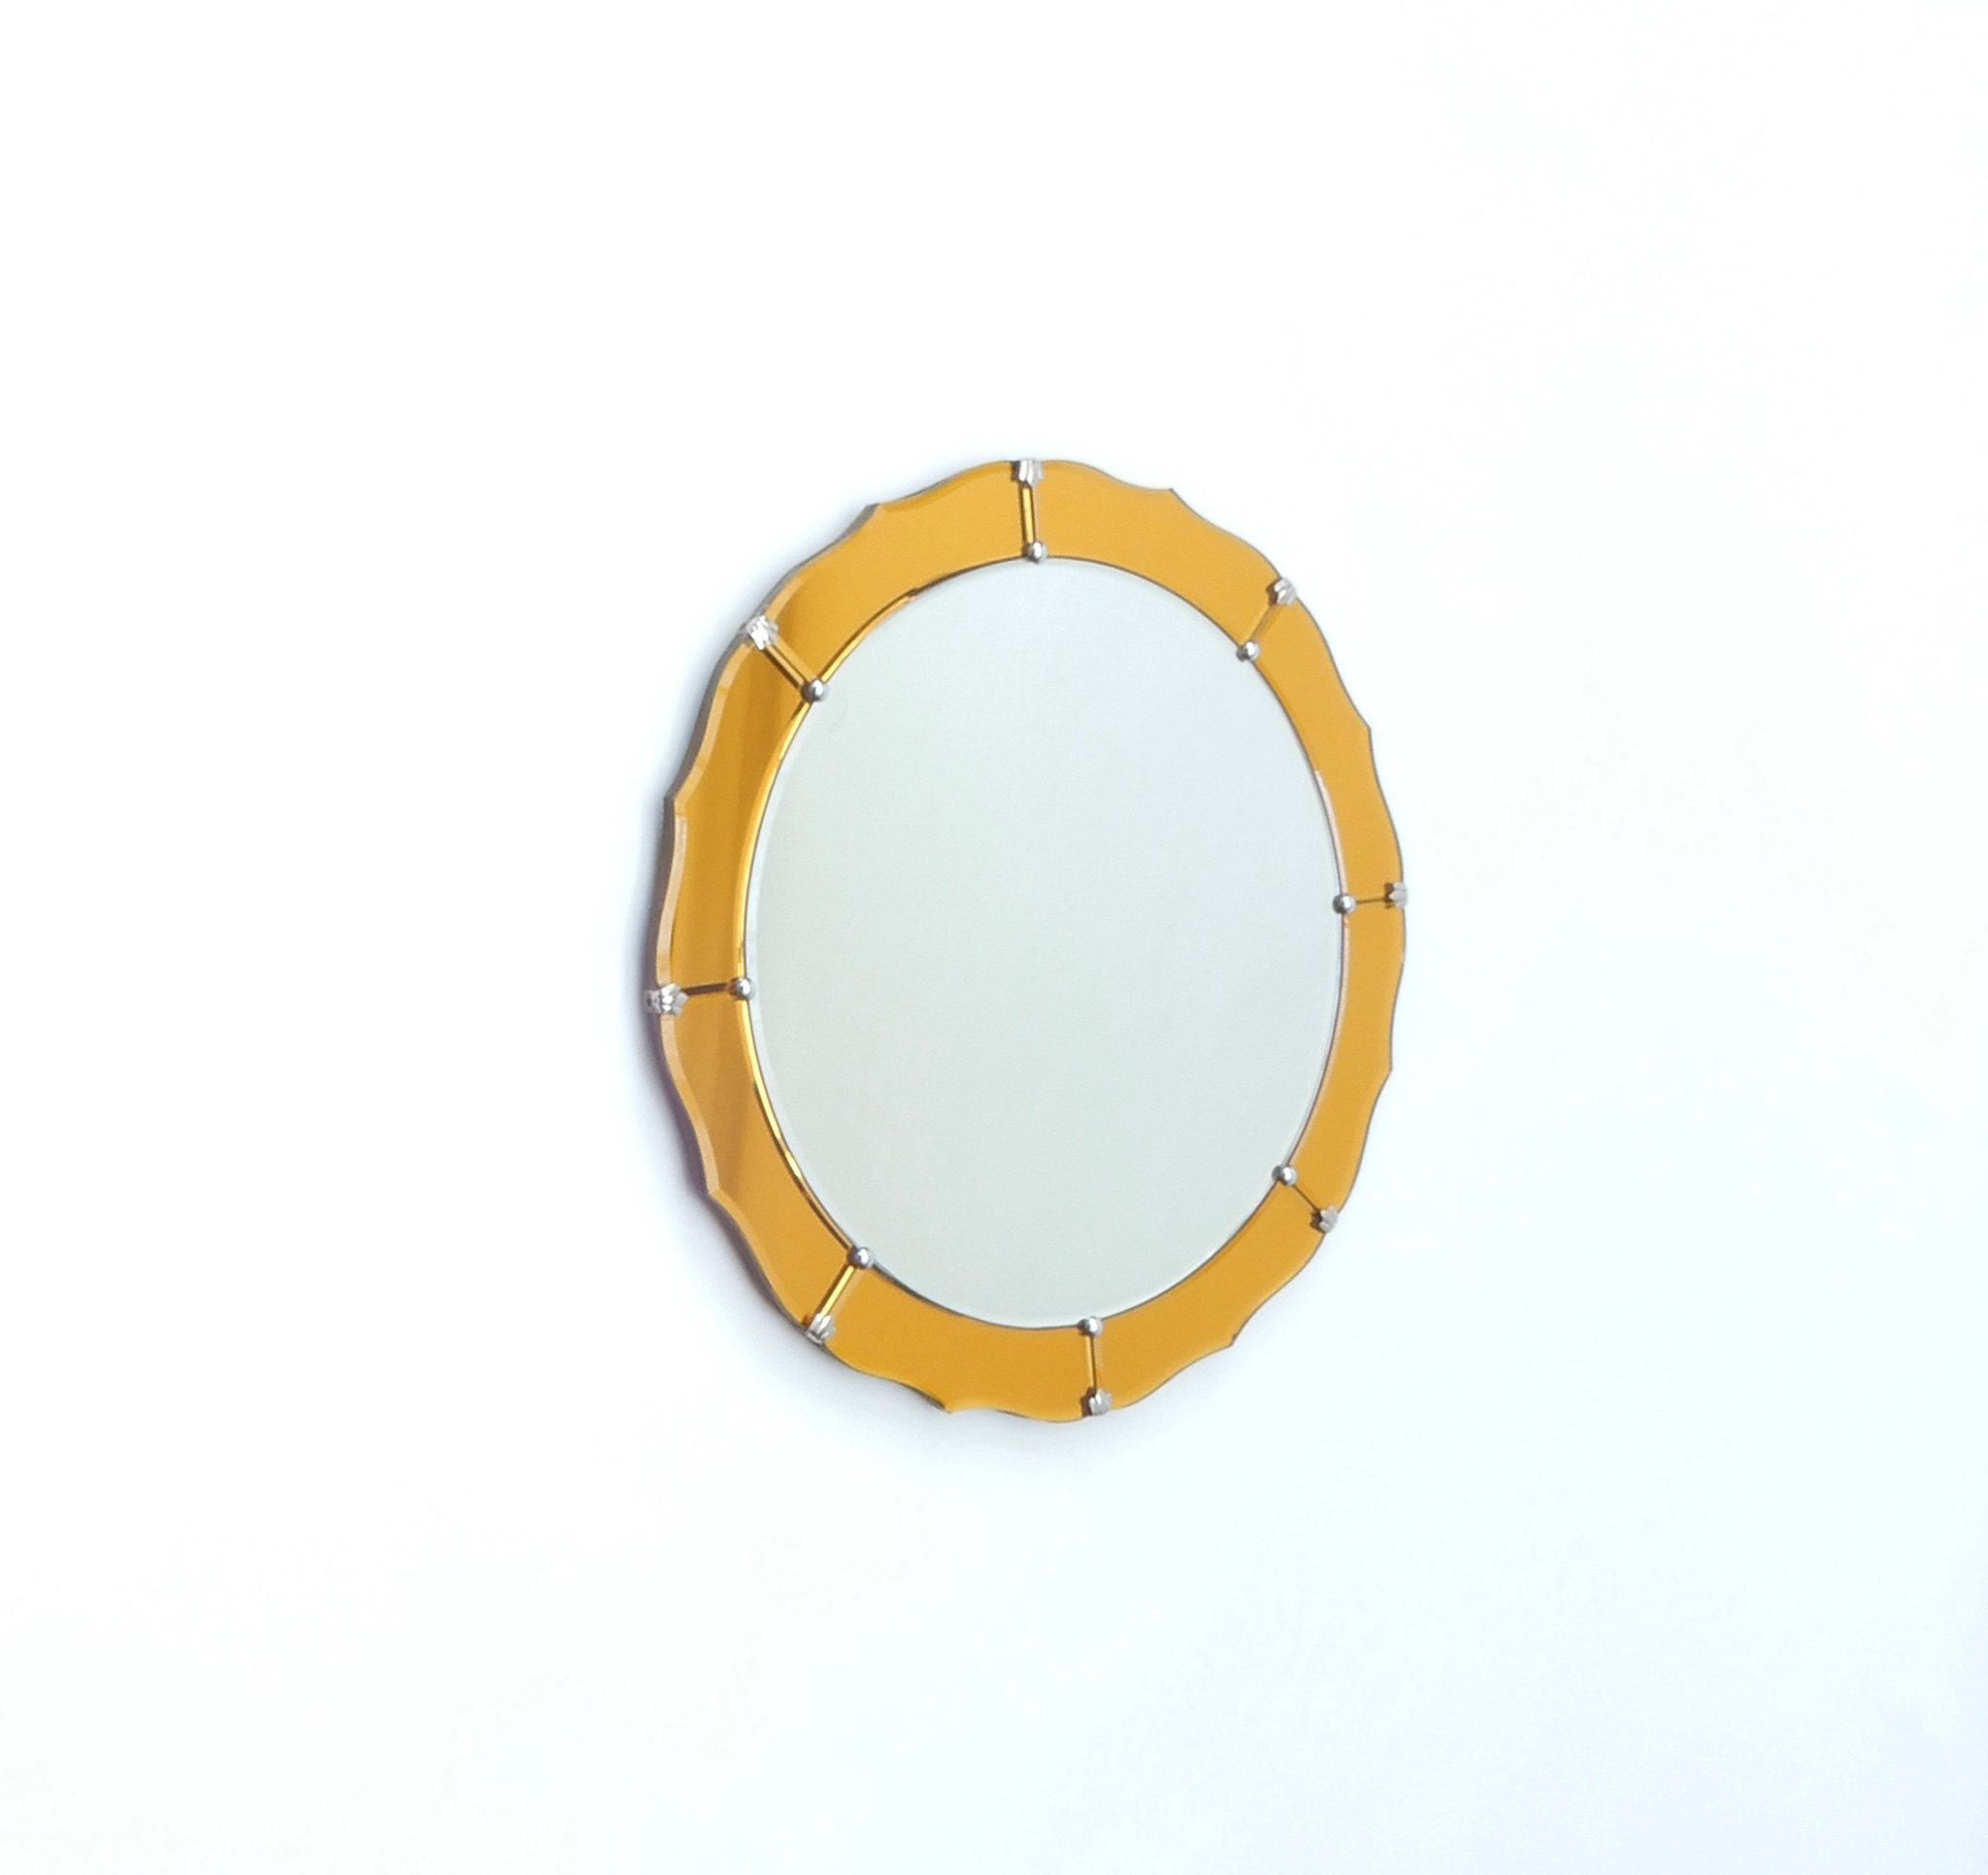 Sold - Midcentury Round Mirror